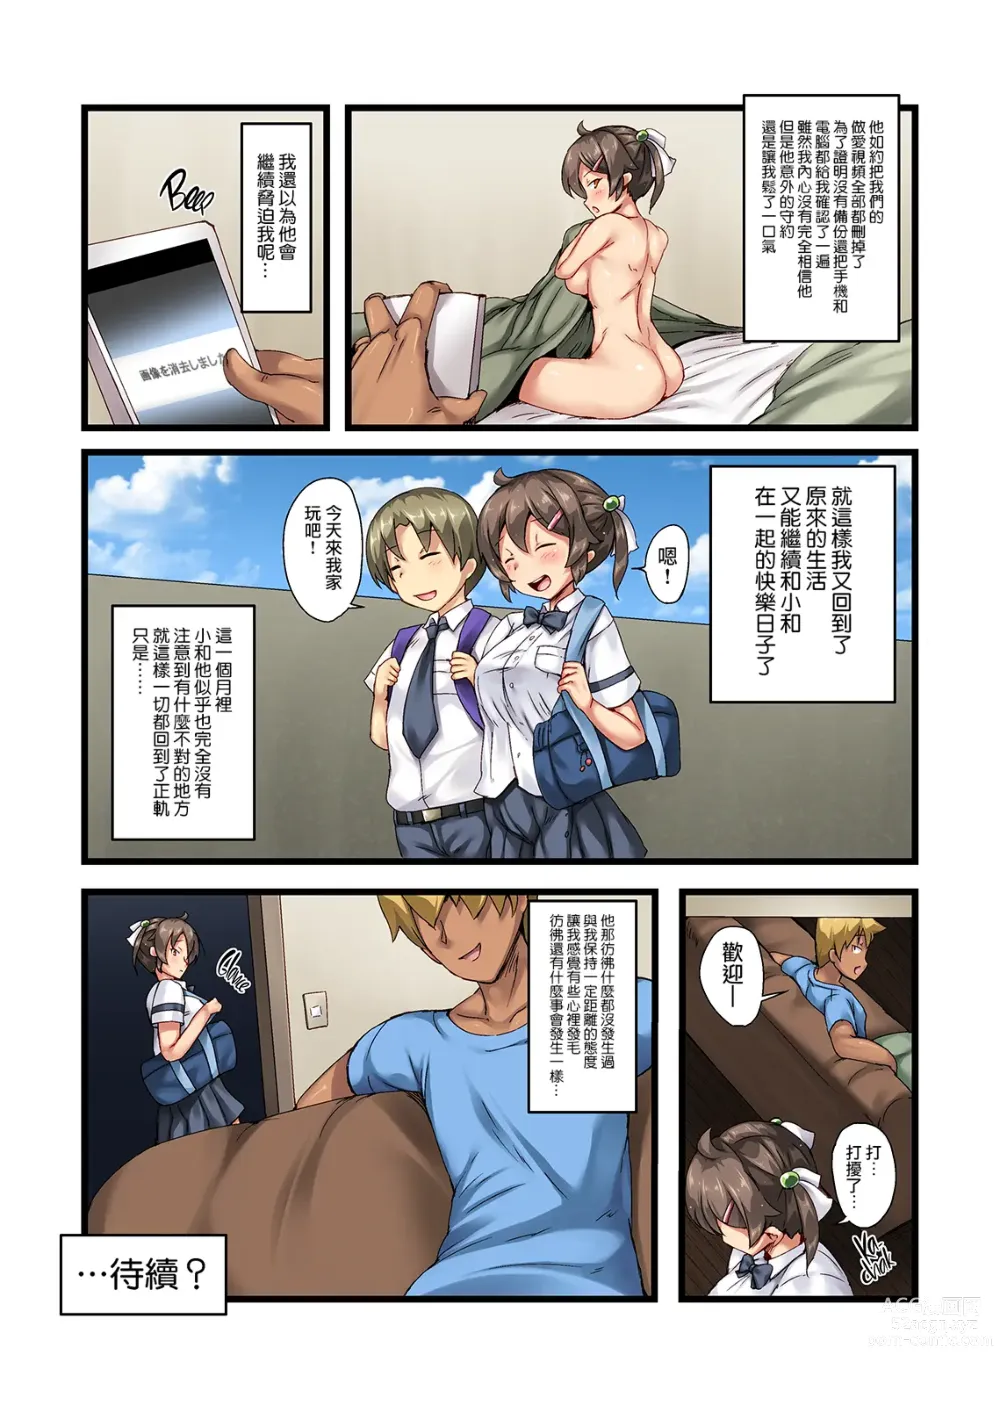 Page 29 of doujinshi 弟の恋人が昔調教した元カノだった+その後